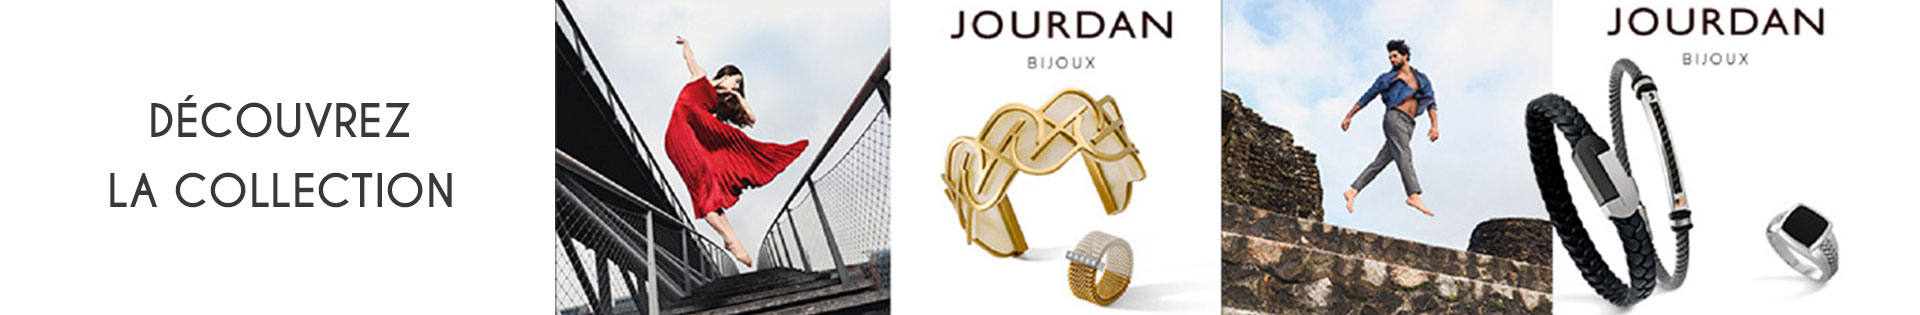 Marques de bijoux - Jourdan Bijoux - acier